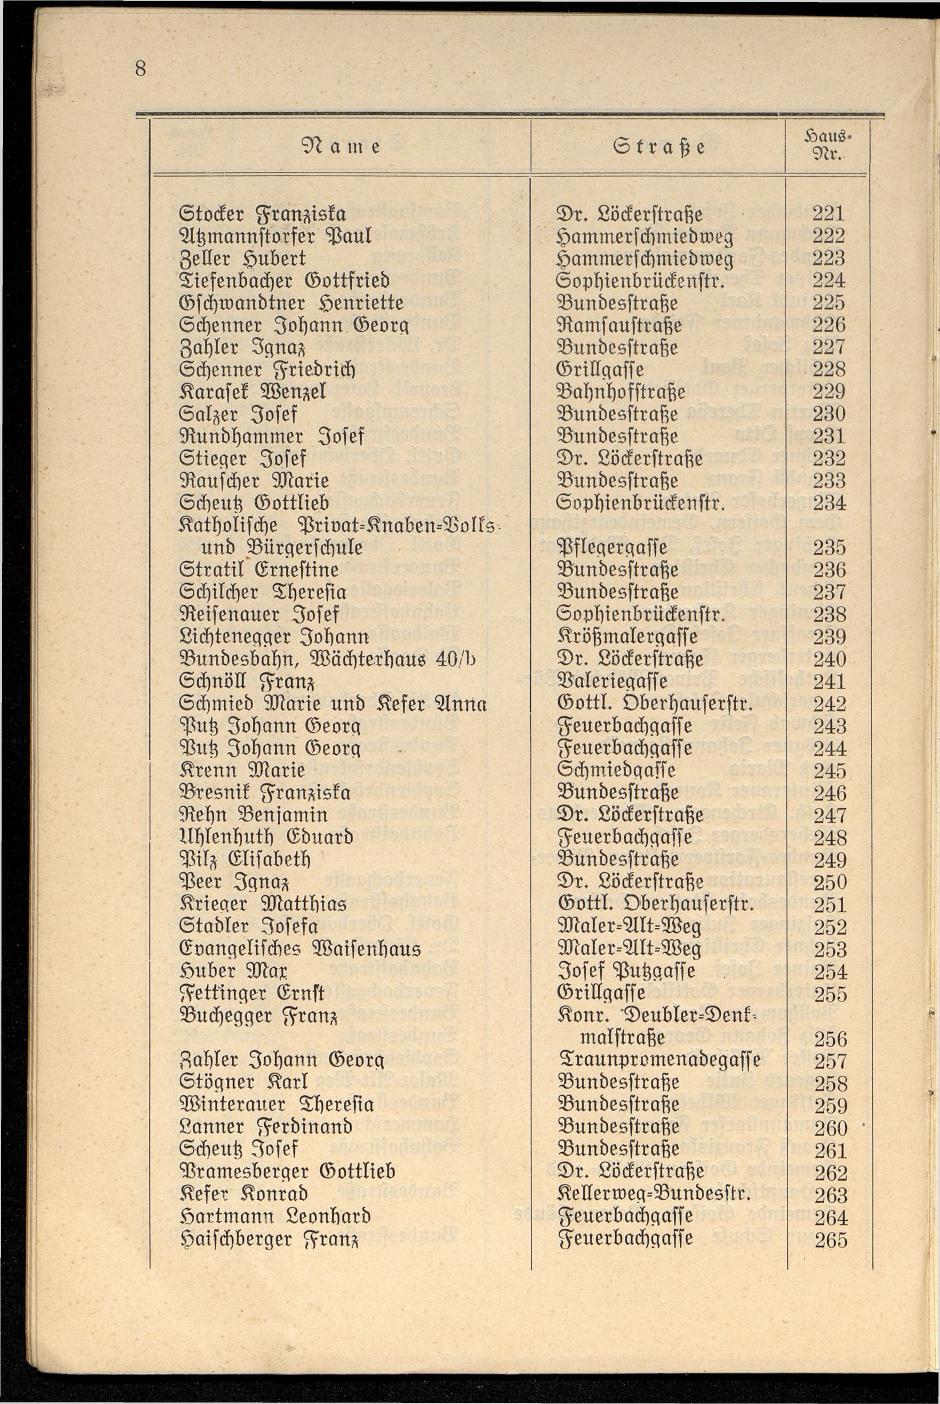 Häuser-Verzeichnis der Gemeinde Goisern nach dem Stande von Juli 1927 - Seite 14